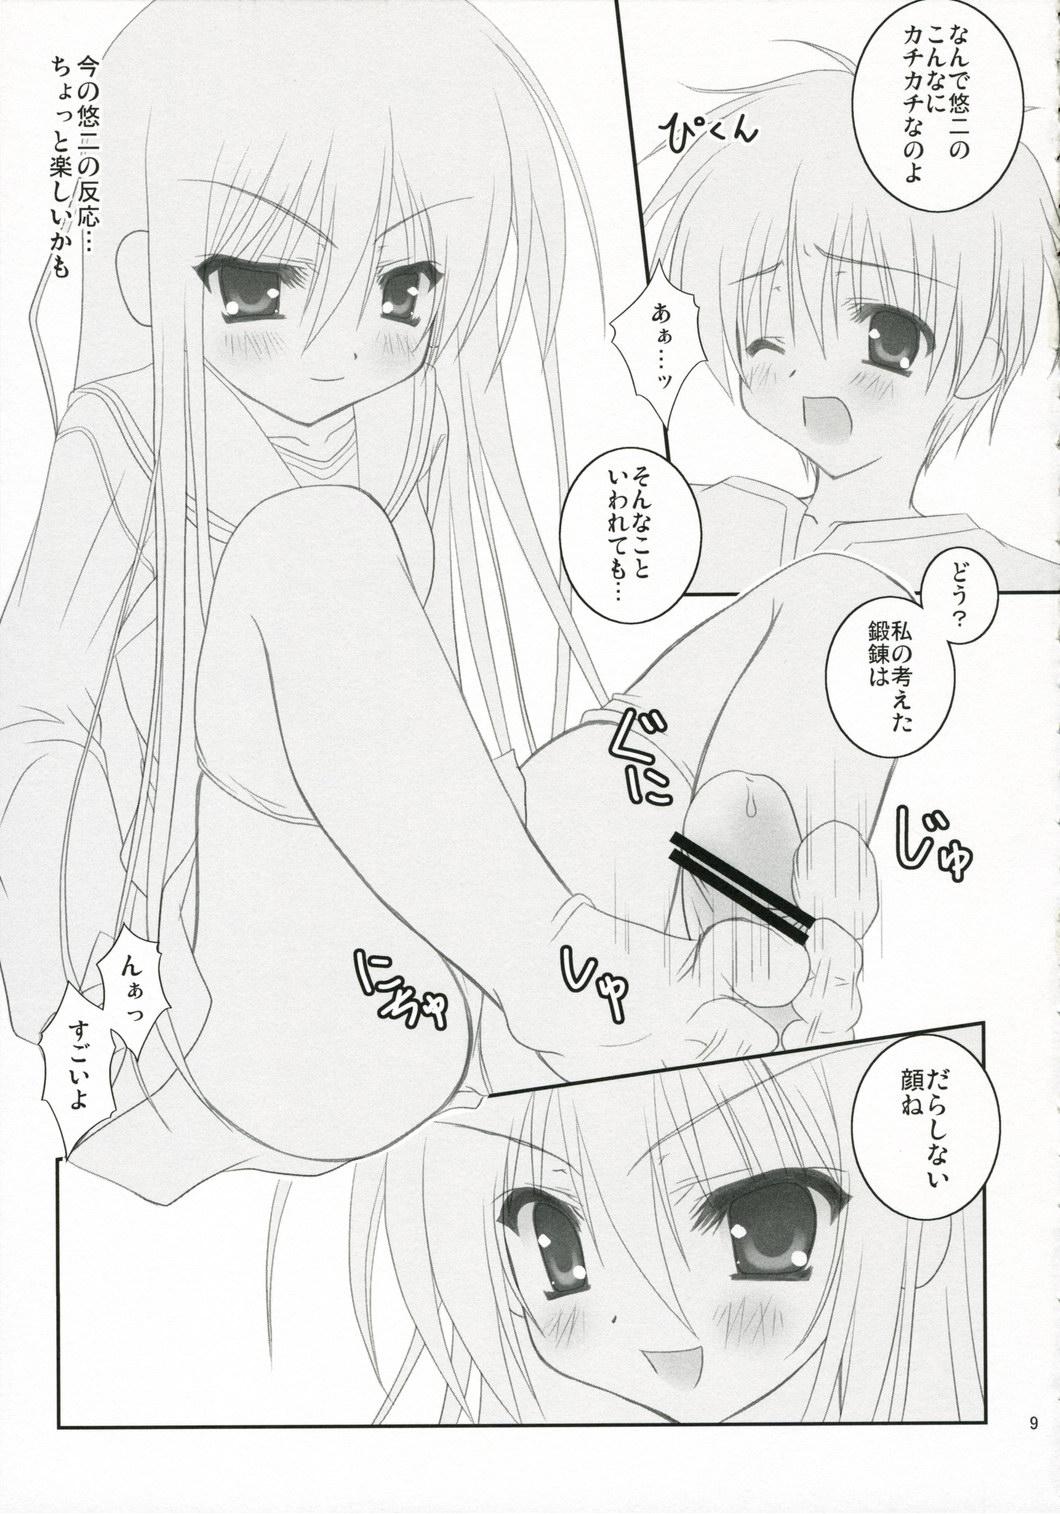 Girlfriend Be, Betsuni XX-shite Hoshii Wake ja nai kara ne! - Shakugan no shana Blowjobs - Page 8